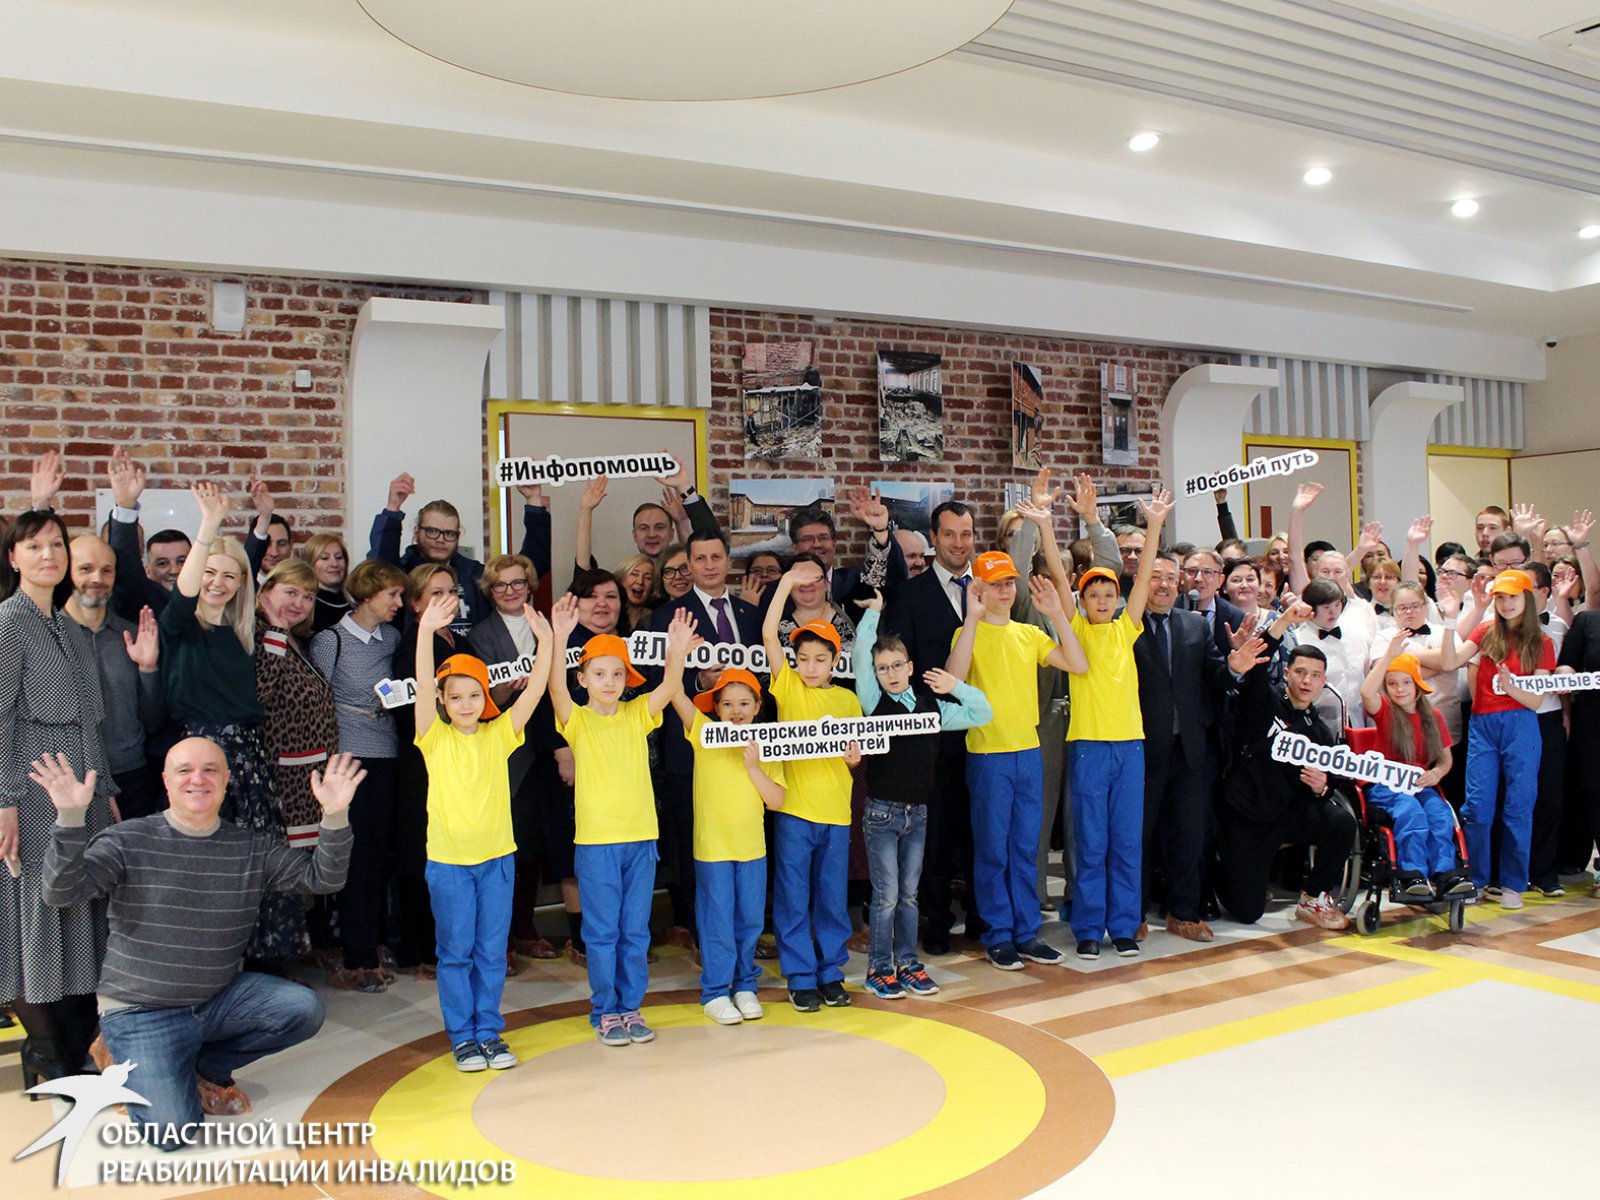 В Международный день инвалидов в Екатеринбурге открылся социальный центр для людей с ограниченными возможностями здоровья